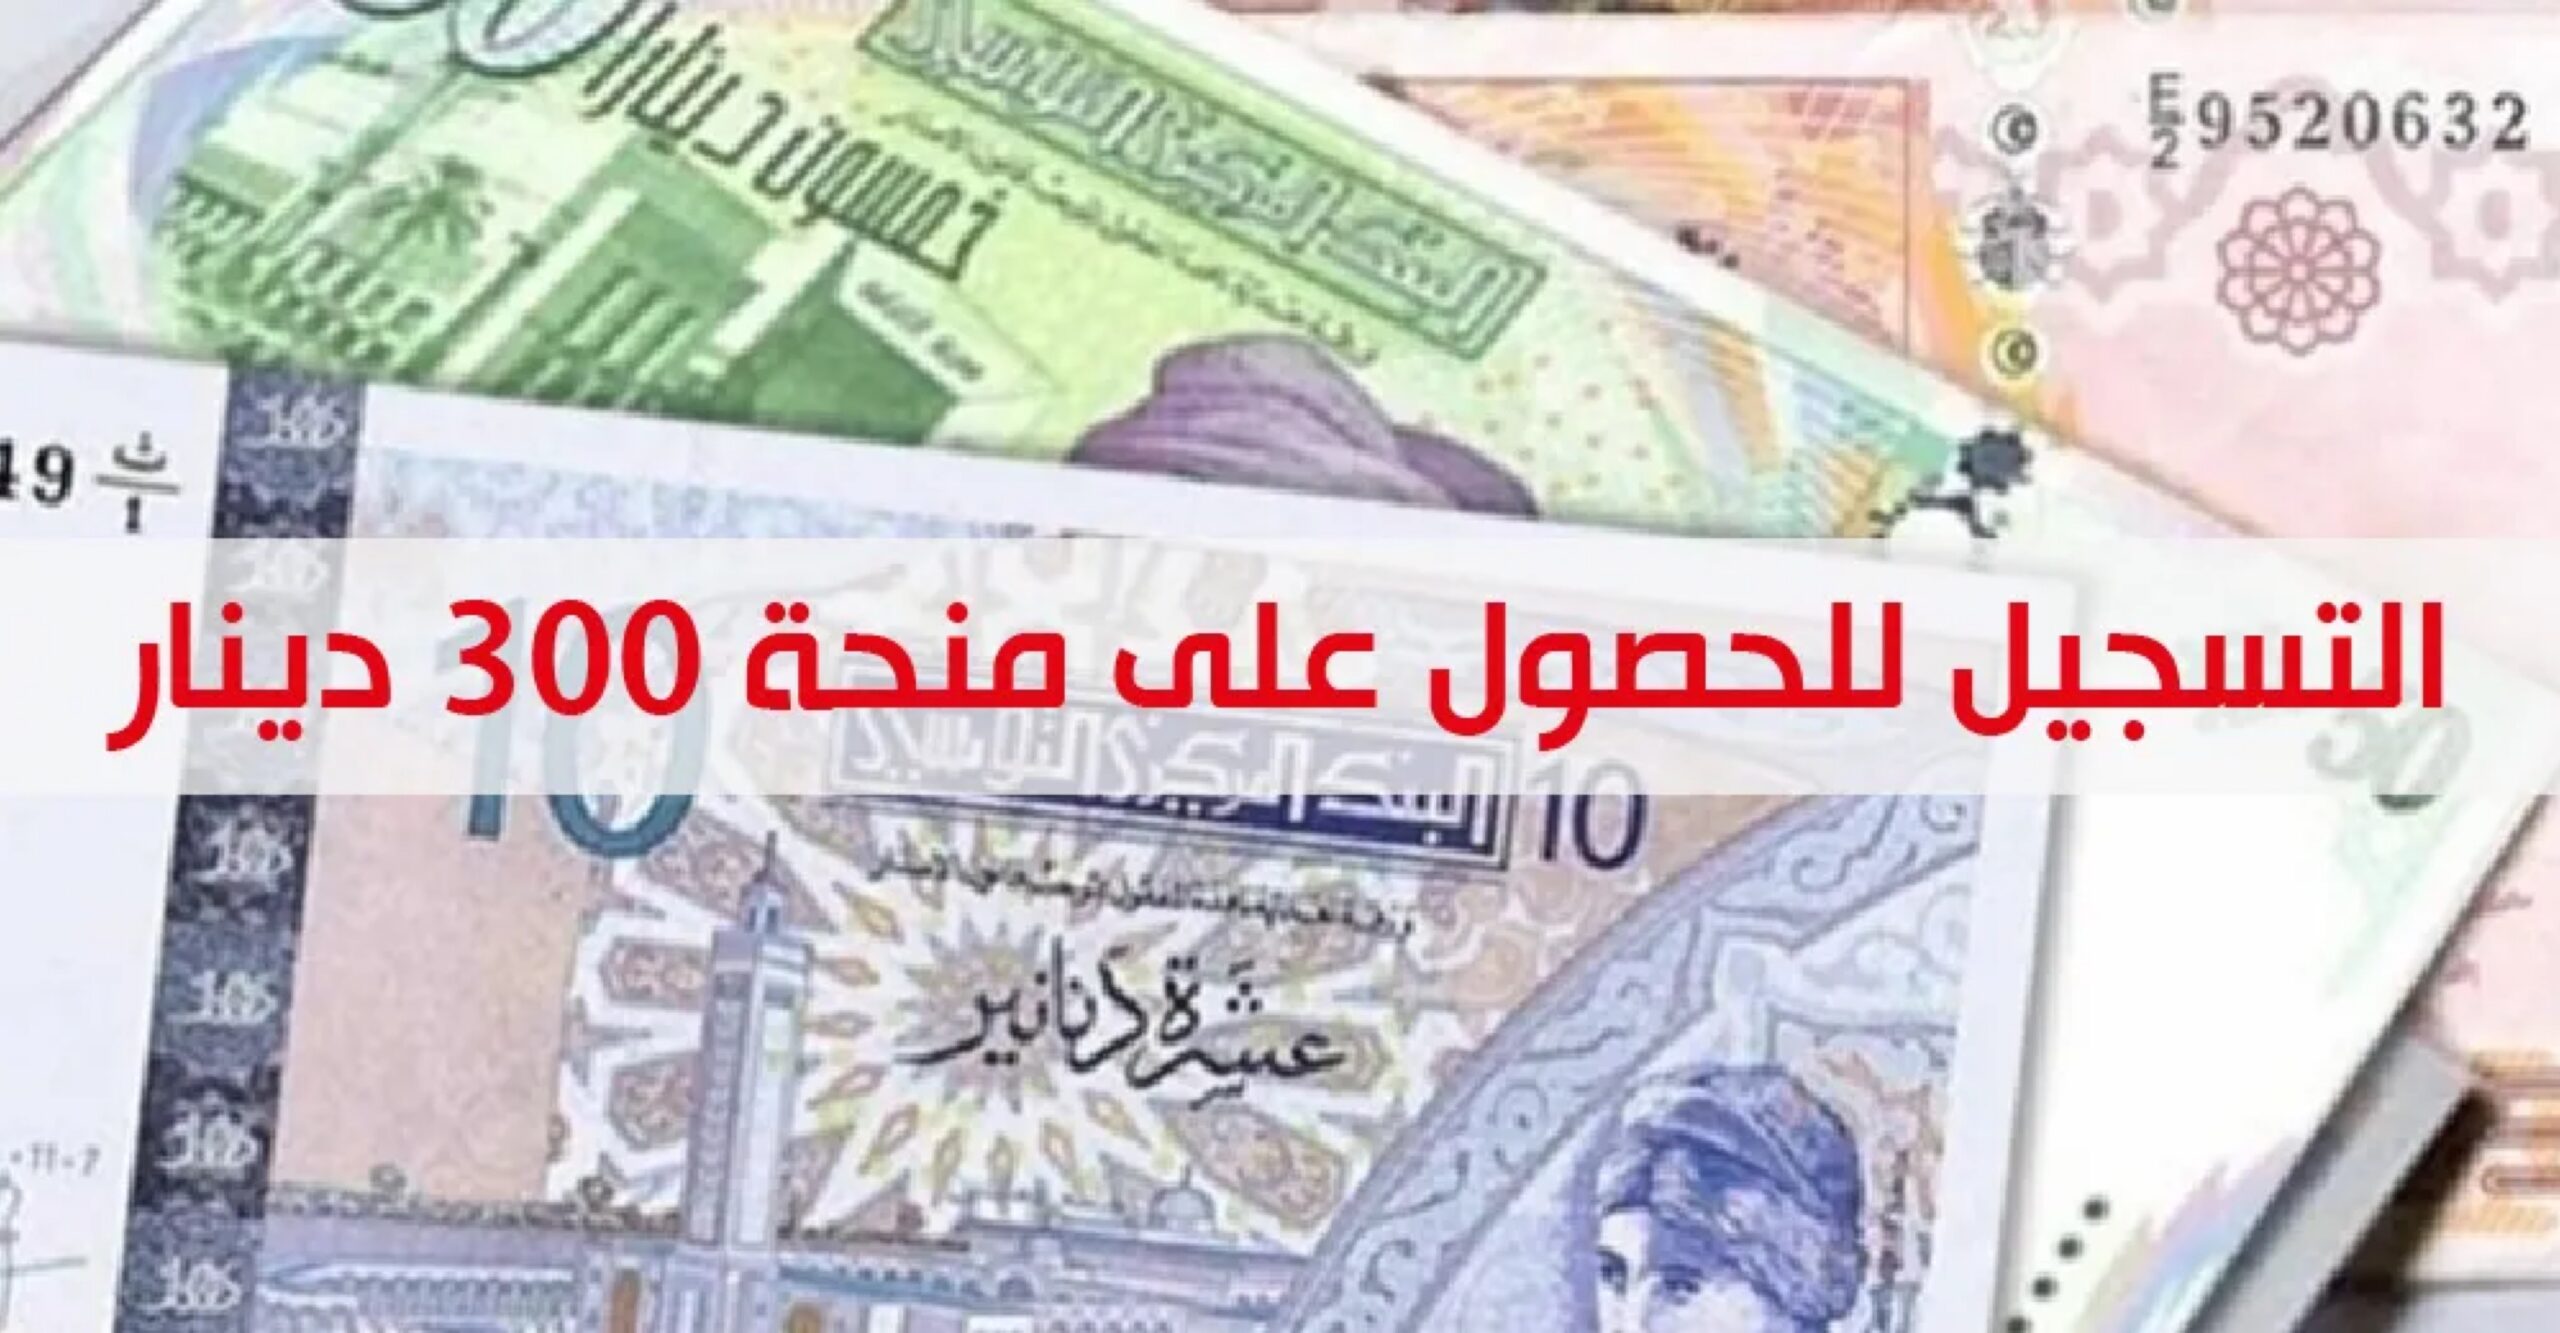 "حصريا" التسجيل في امان 300 دينار amen social المساعدات الاجتماعية في تونس